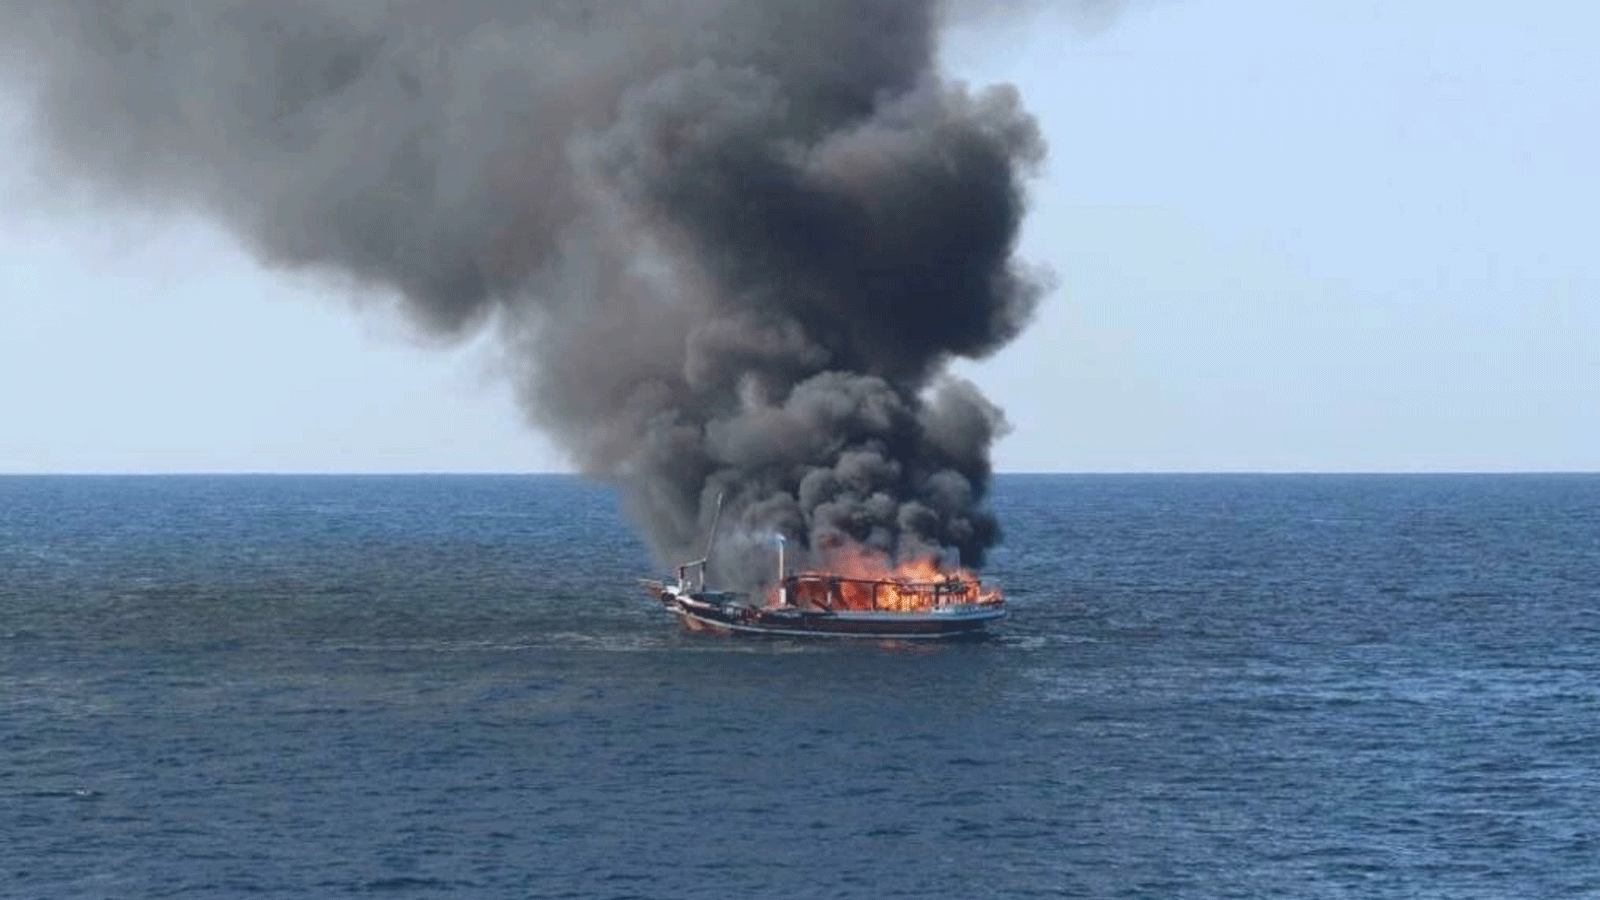 البحرية الأميركية تقول أن النيران اشتعلت في السفينة وانفجرت قبل أن تنقذ خمسة بحارة إيرانيين وتضبط أكثر من طنين من المخدرات غير المشروعة